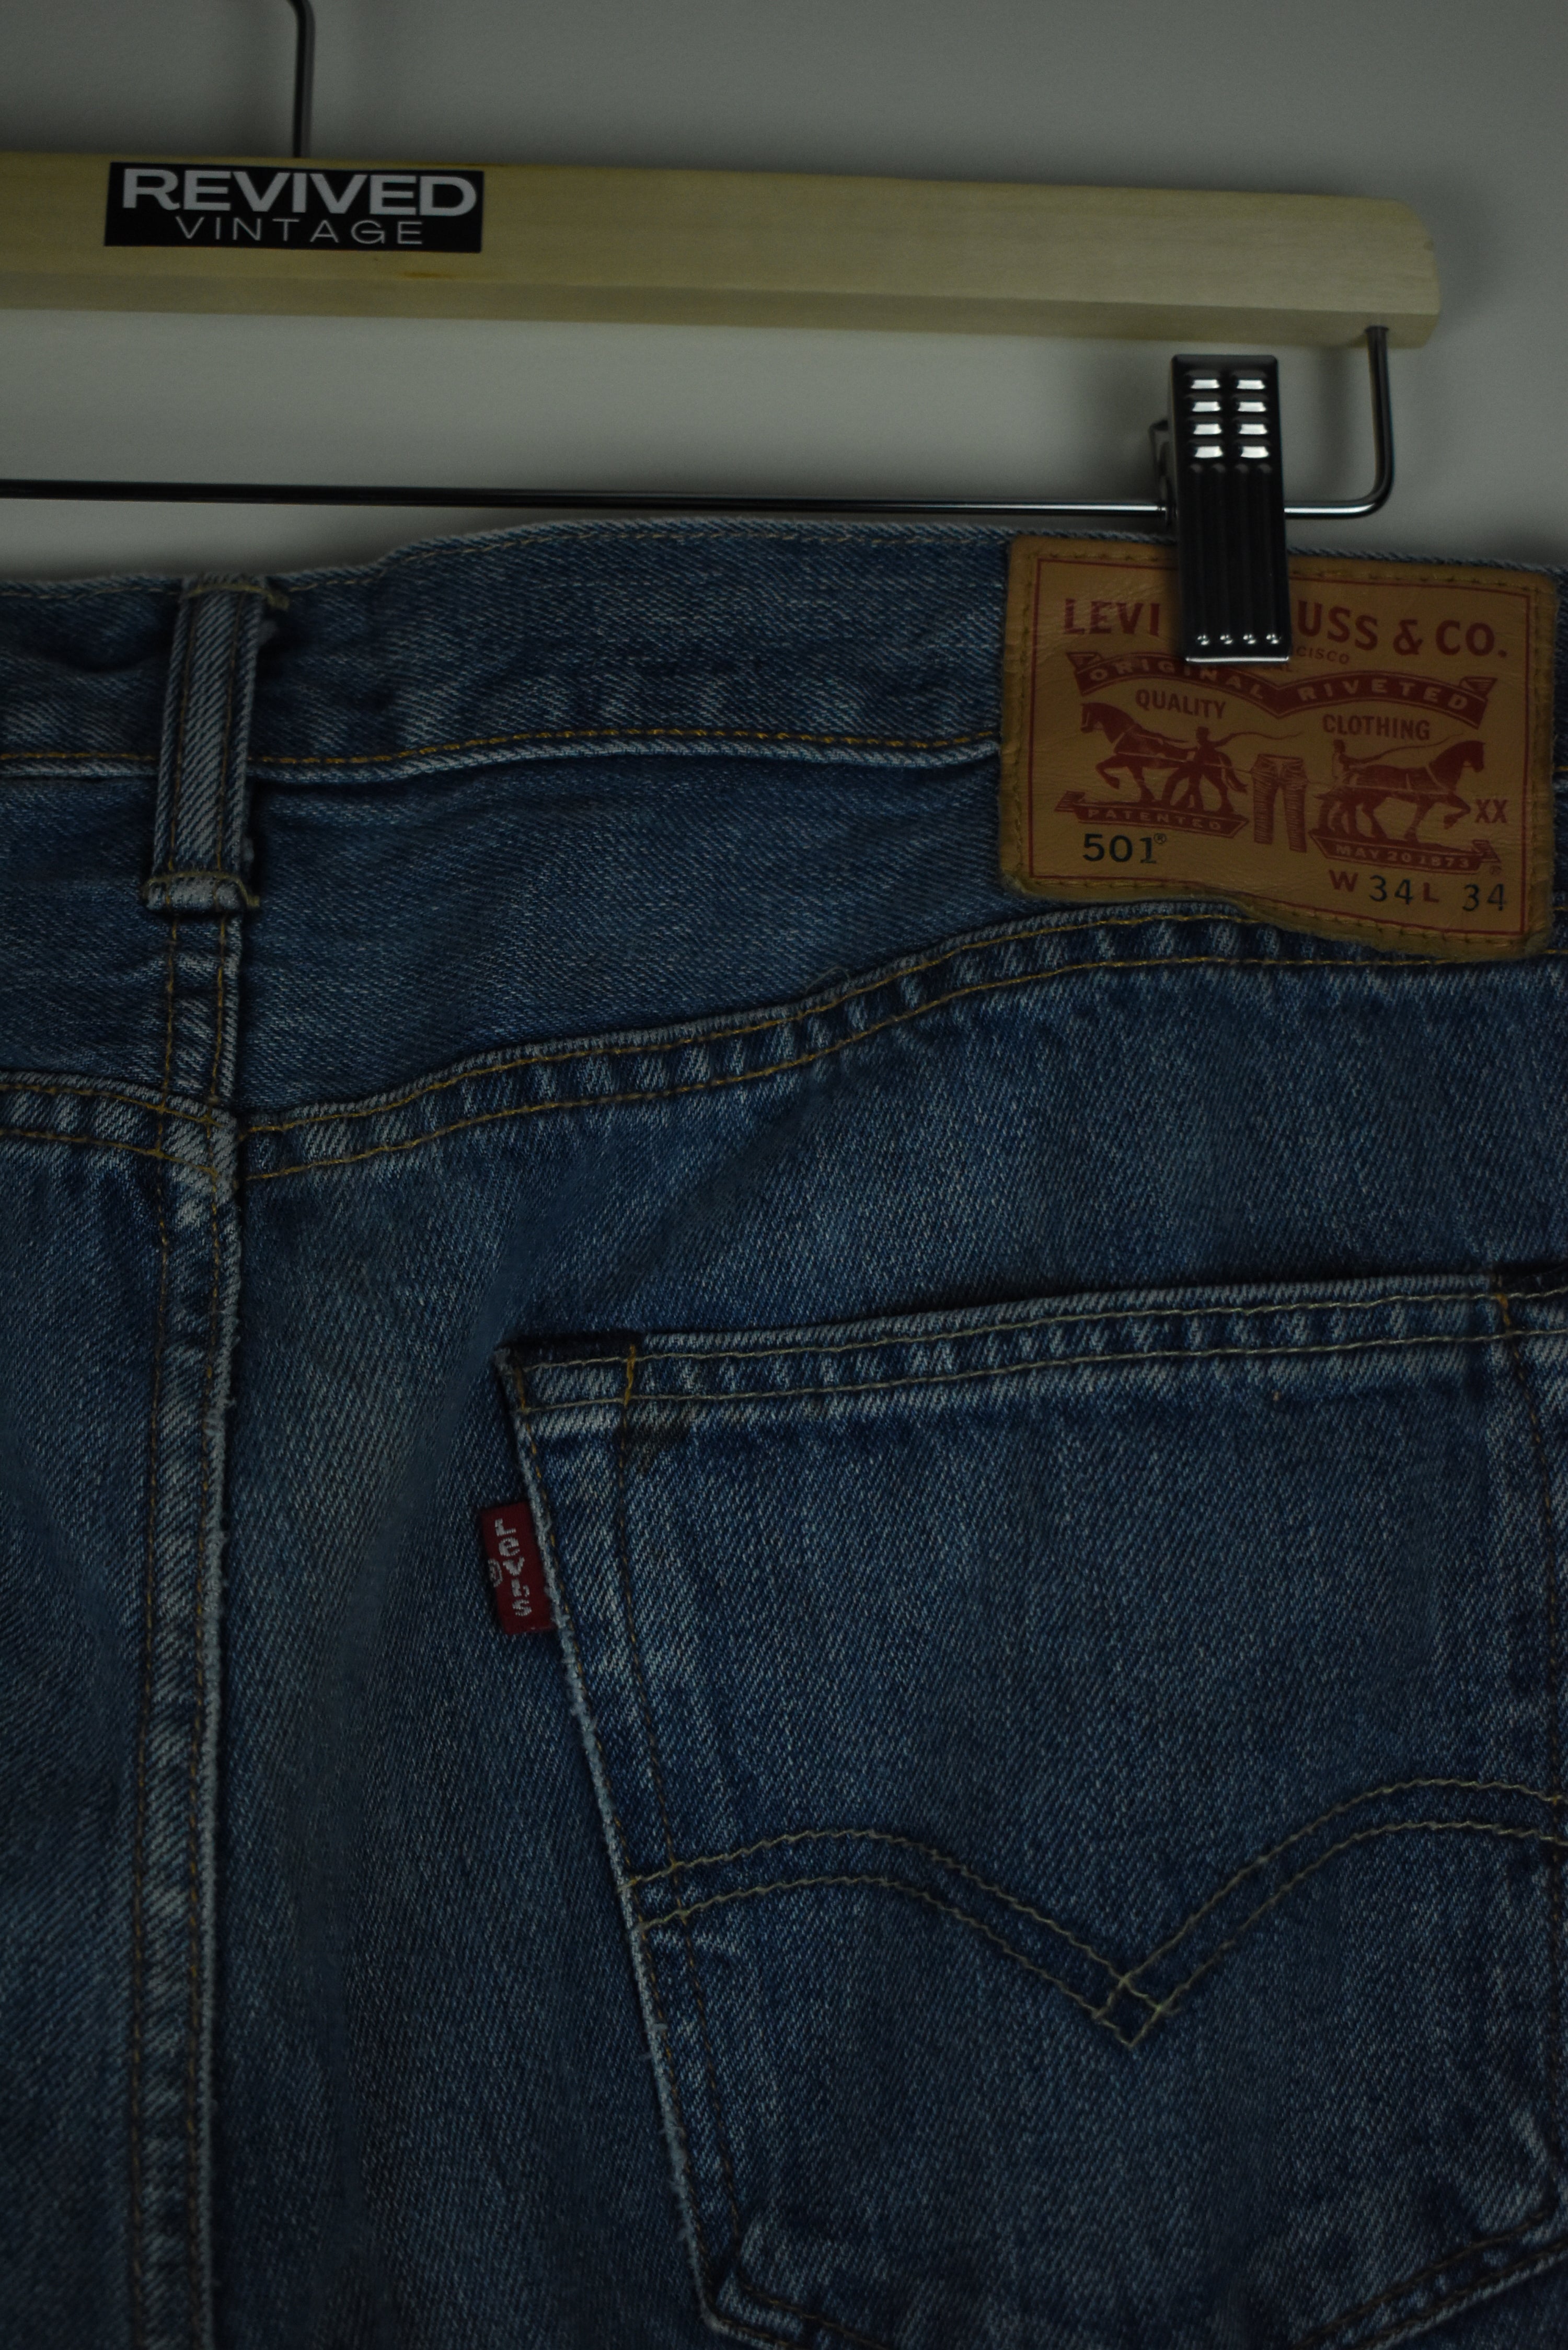 Vintage Levi's 501 Jeans 34 x 34